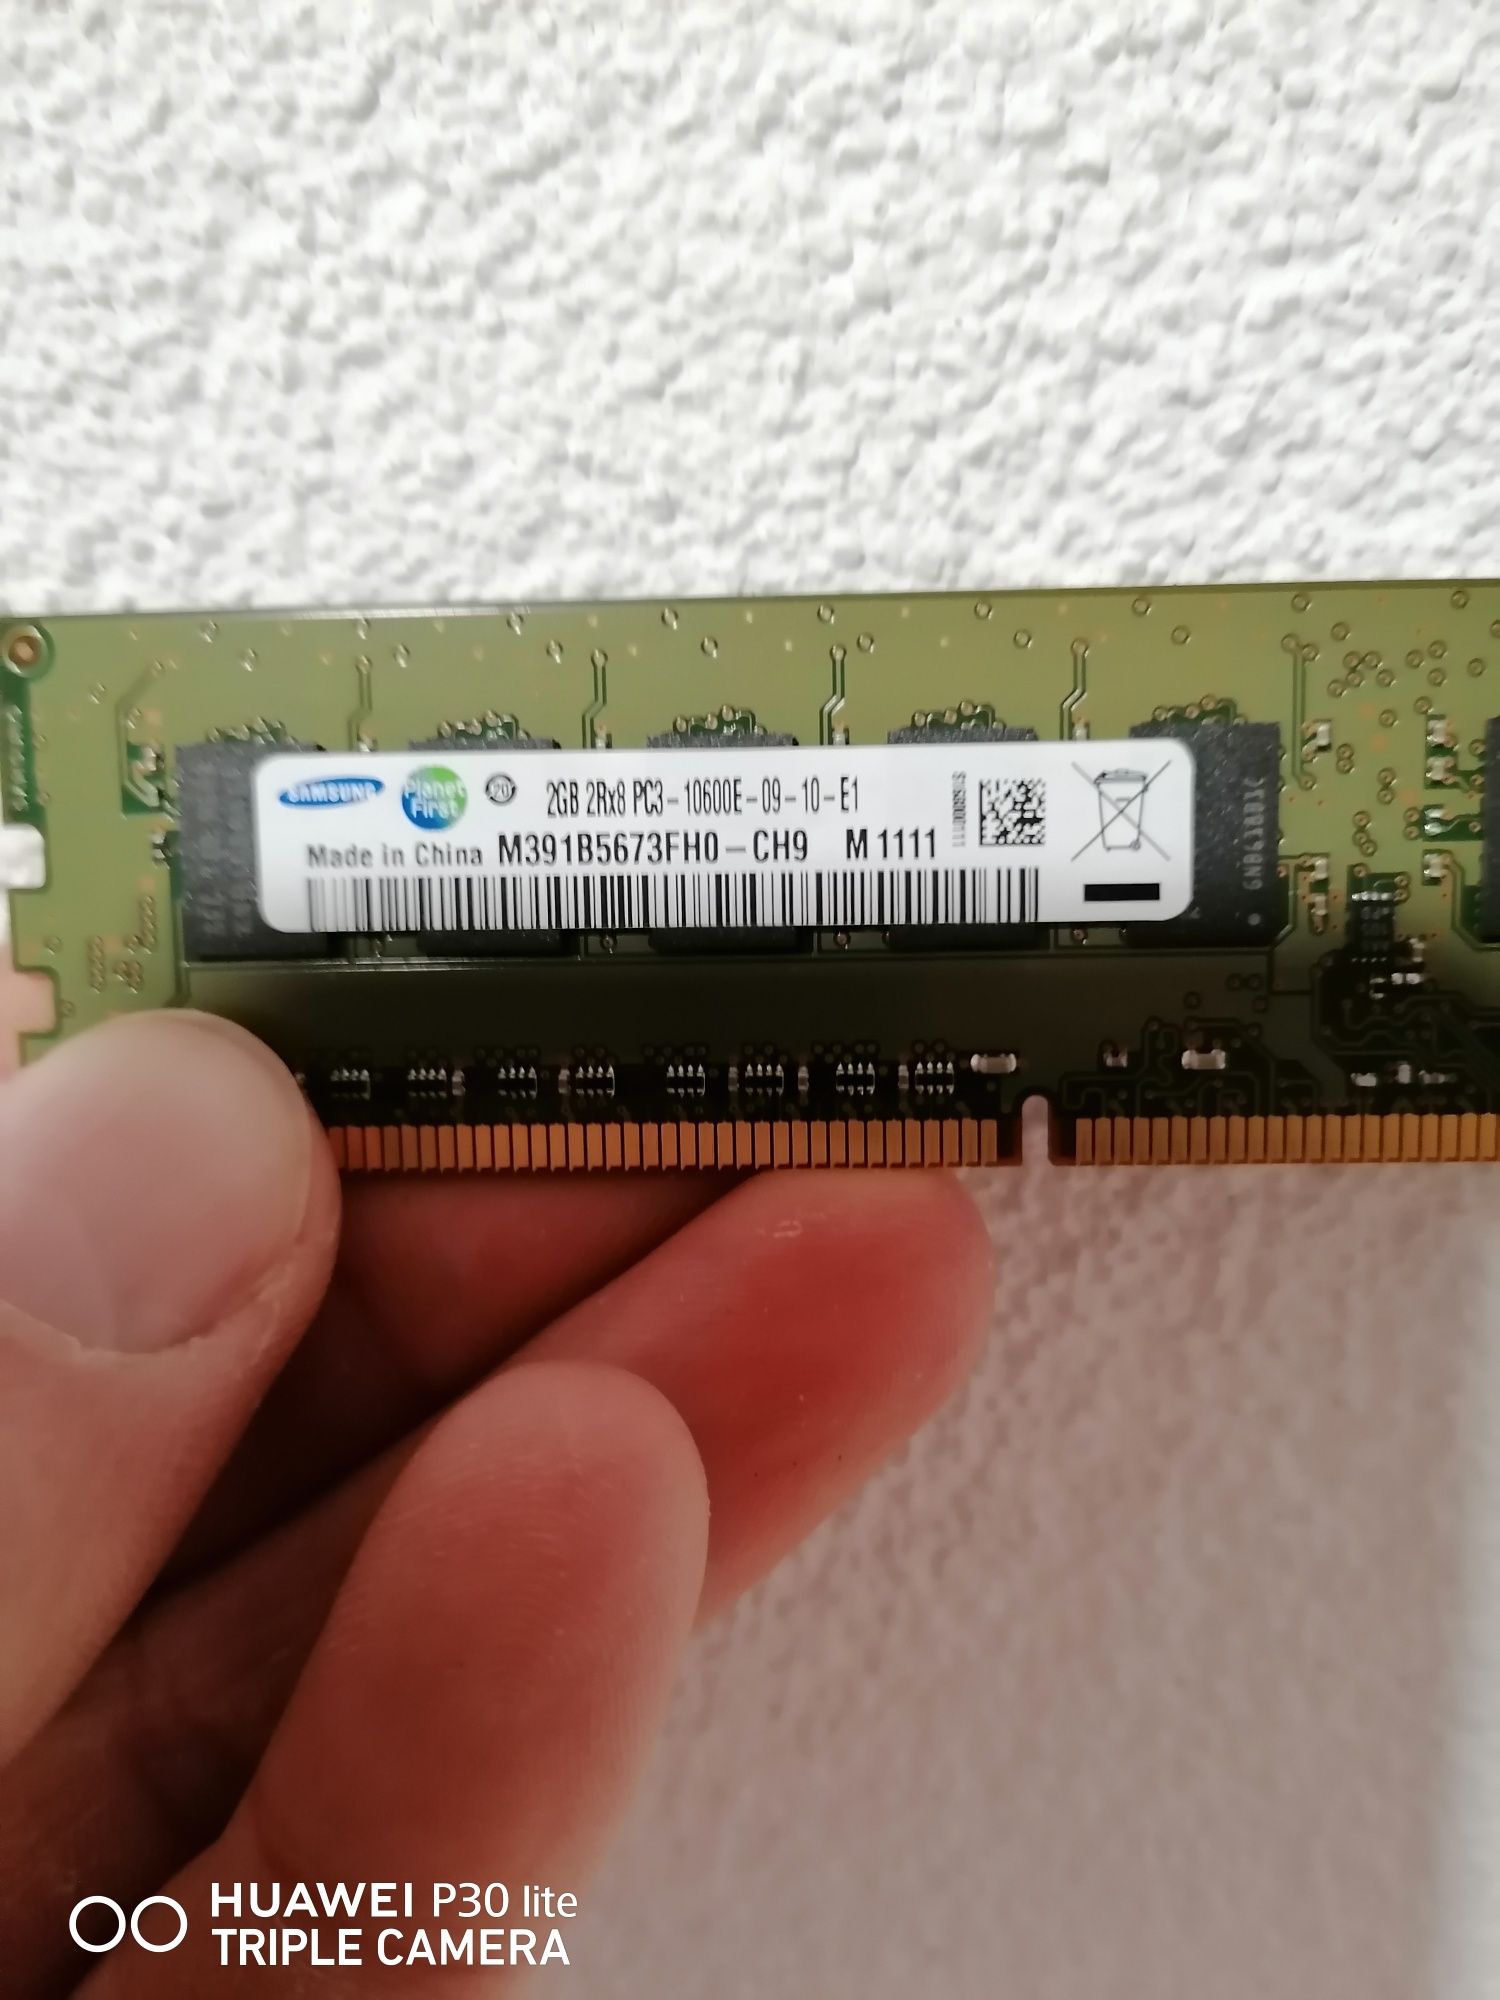 RAM Samsung 2 GB unbuffered ecc